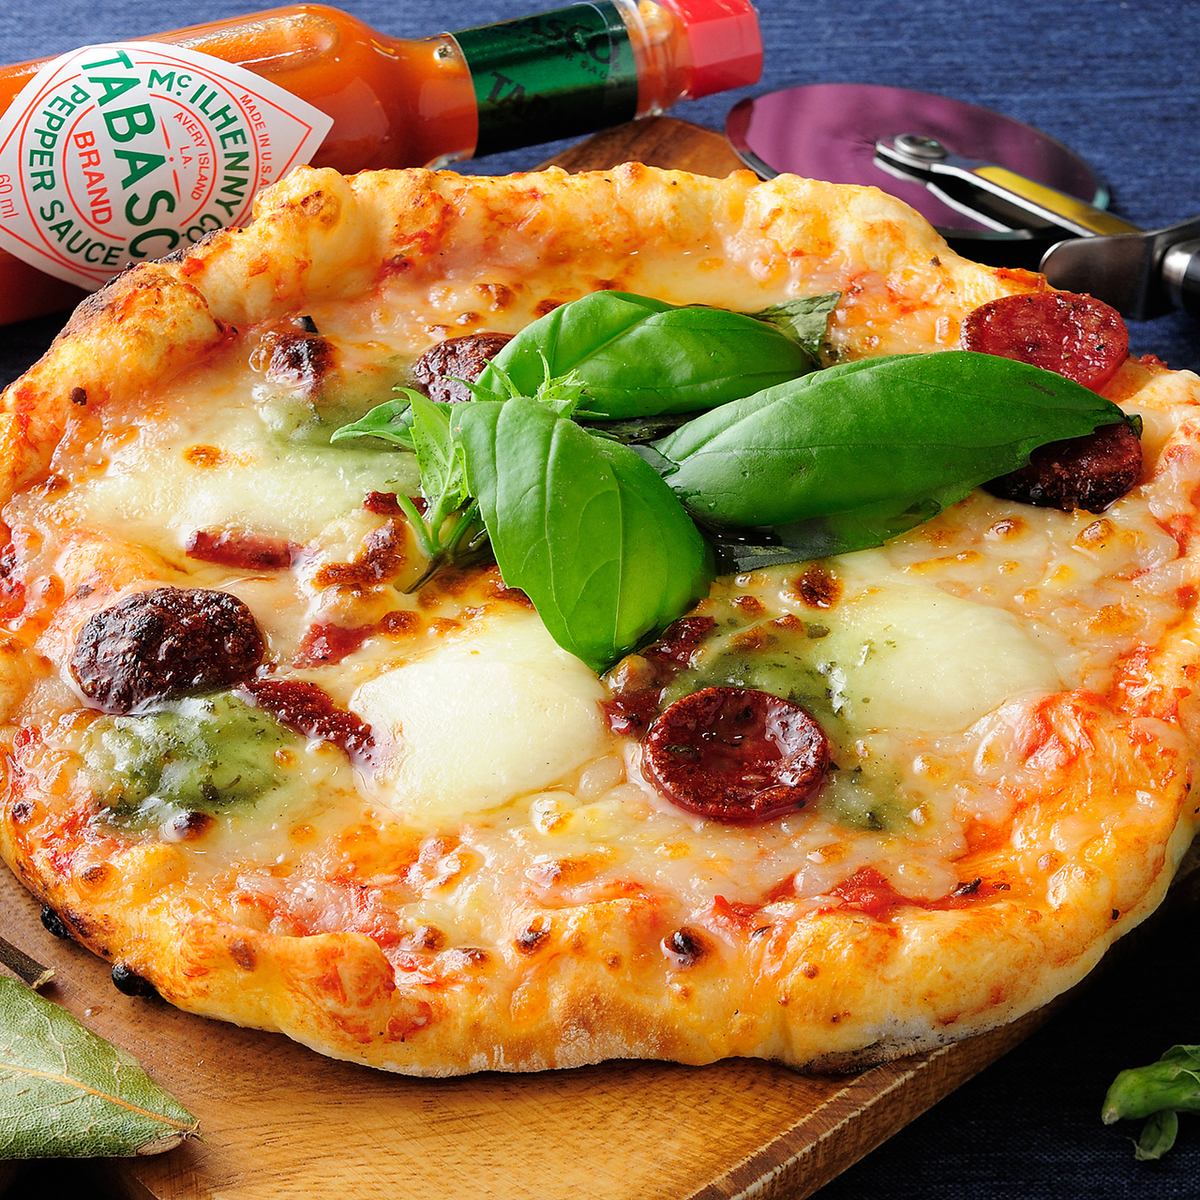 본격 피자 가마가 보이는 특등석에서 식사를 즐길 수 있습니다!